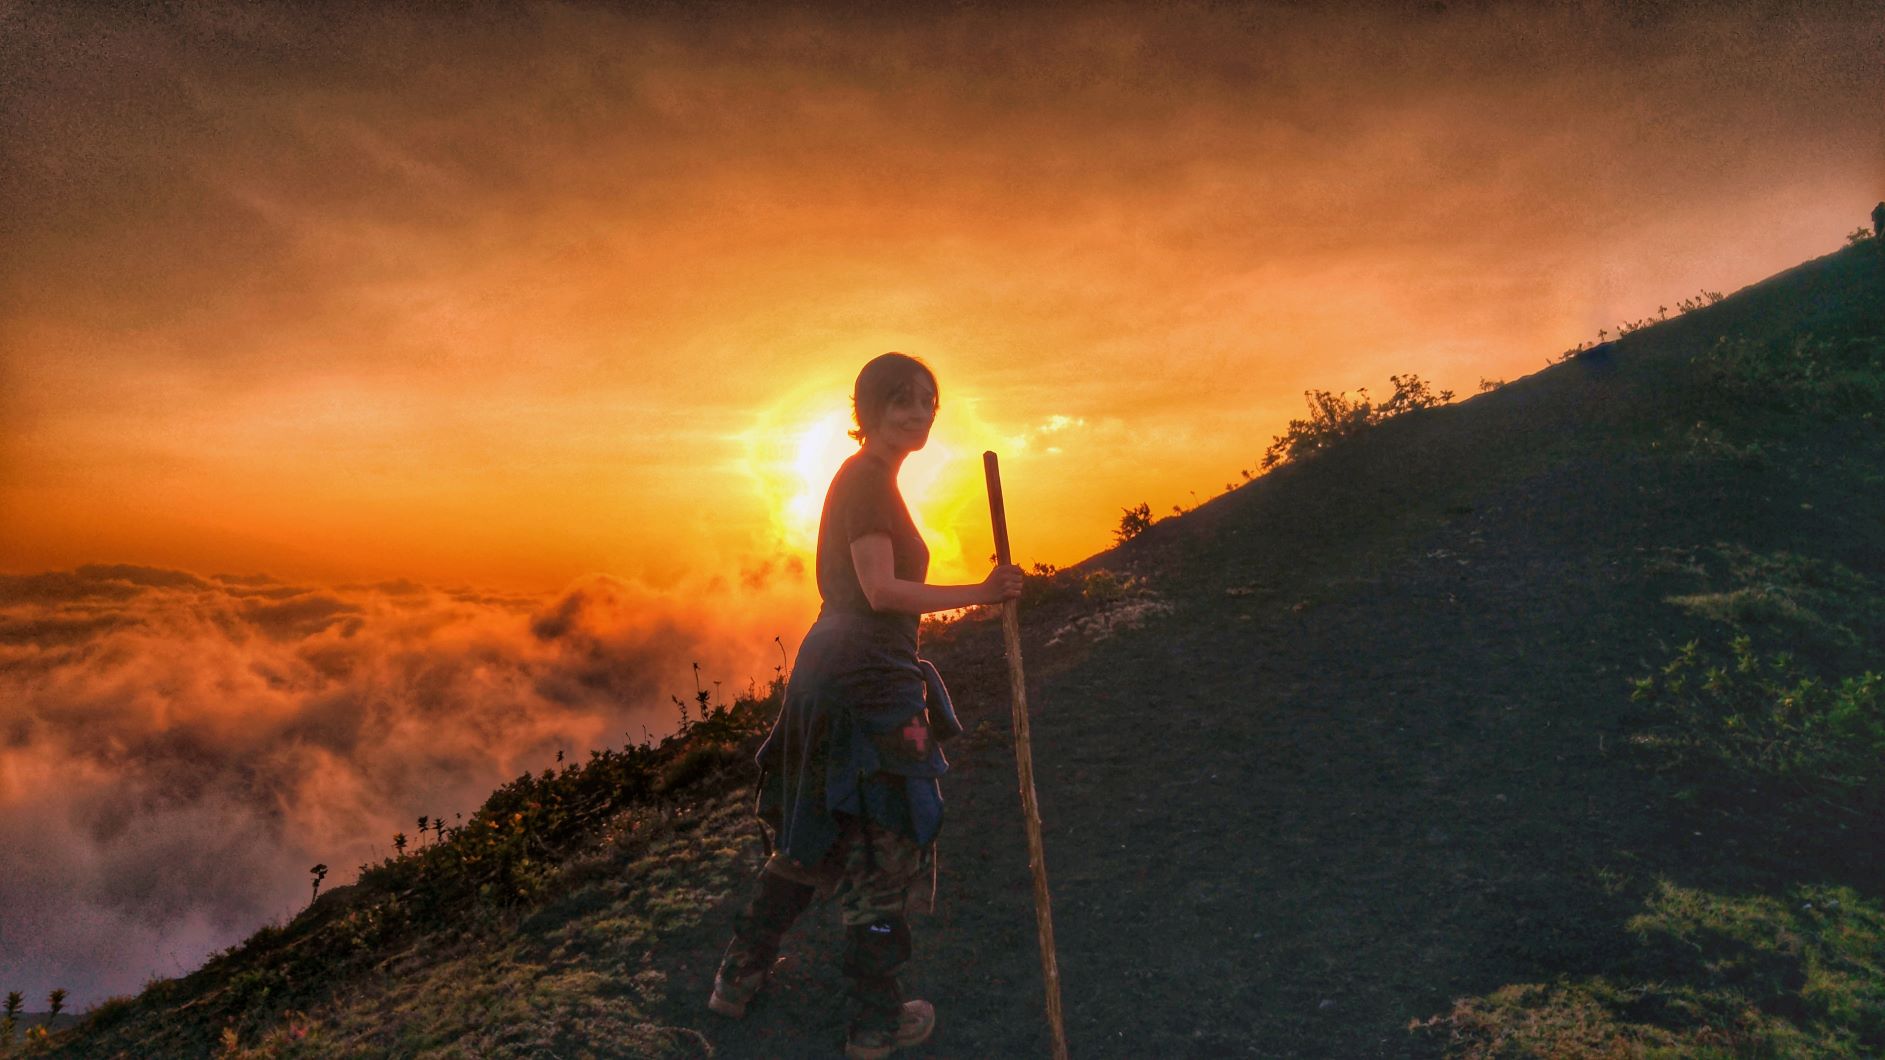 Volcano sunset hiking